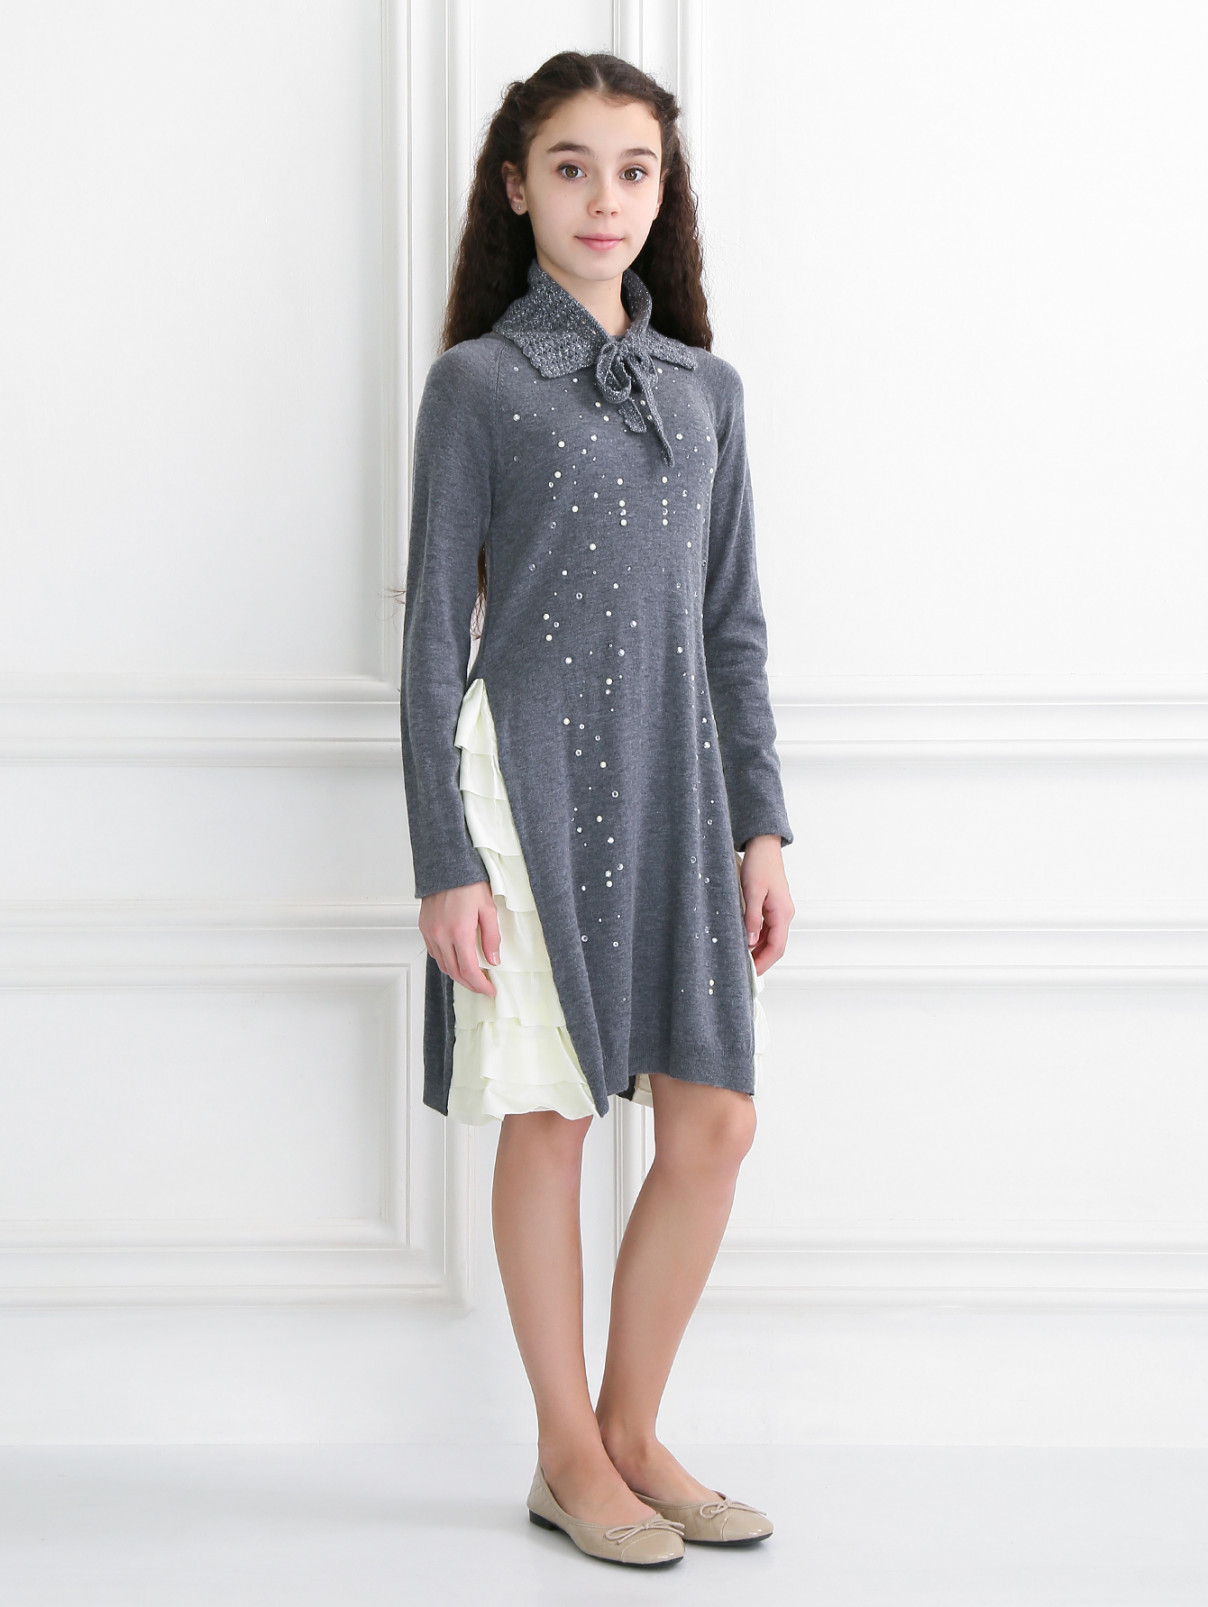 Трикотажное платье с шелковистыми вставками и воротничком MiMiSol  –  Модель Общий вид  – Цвет:  Серый